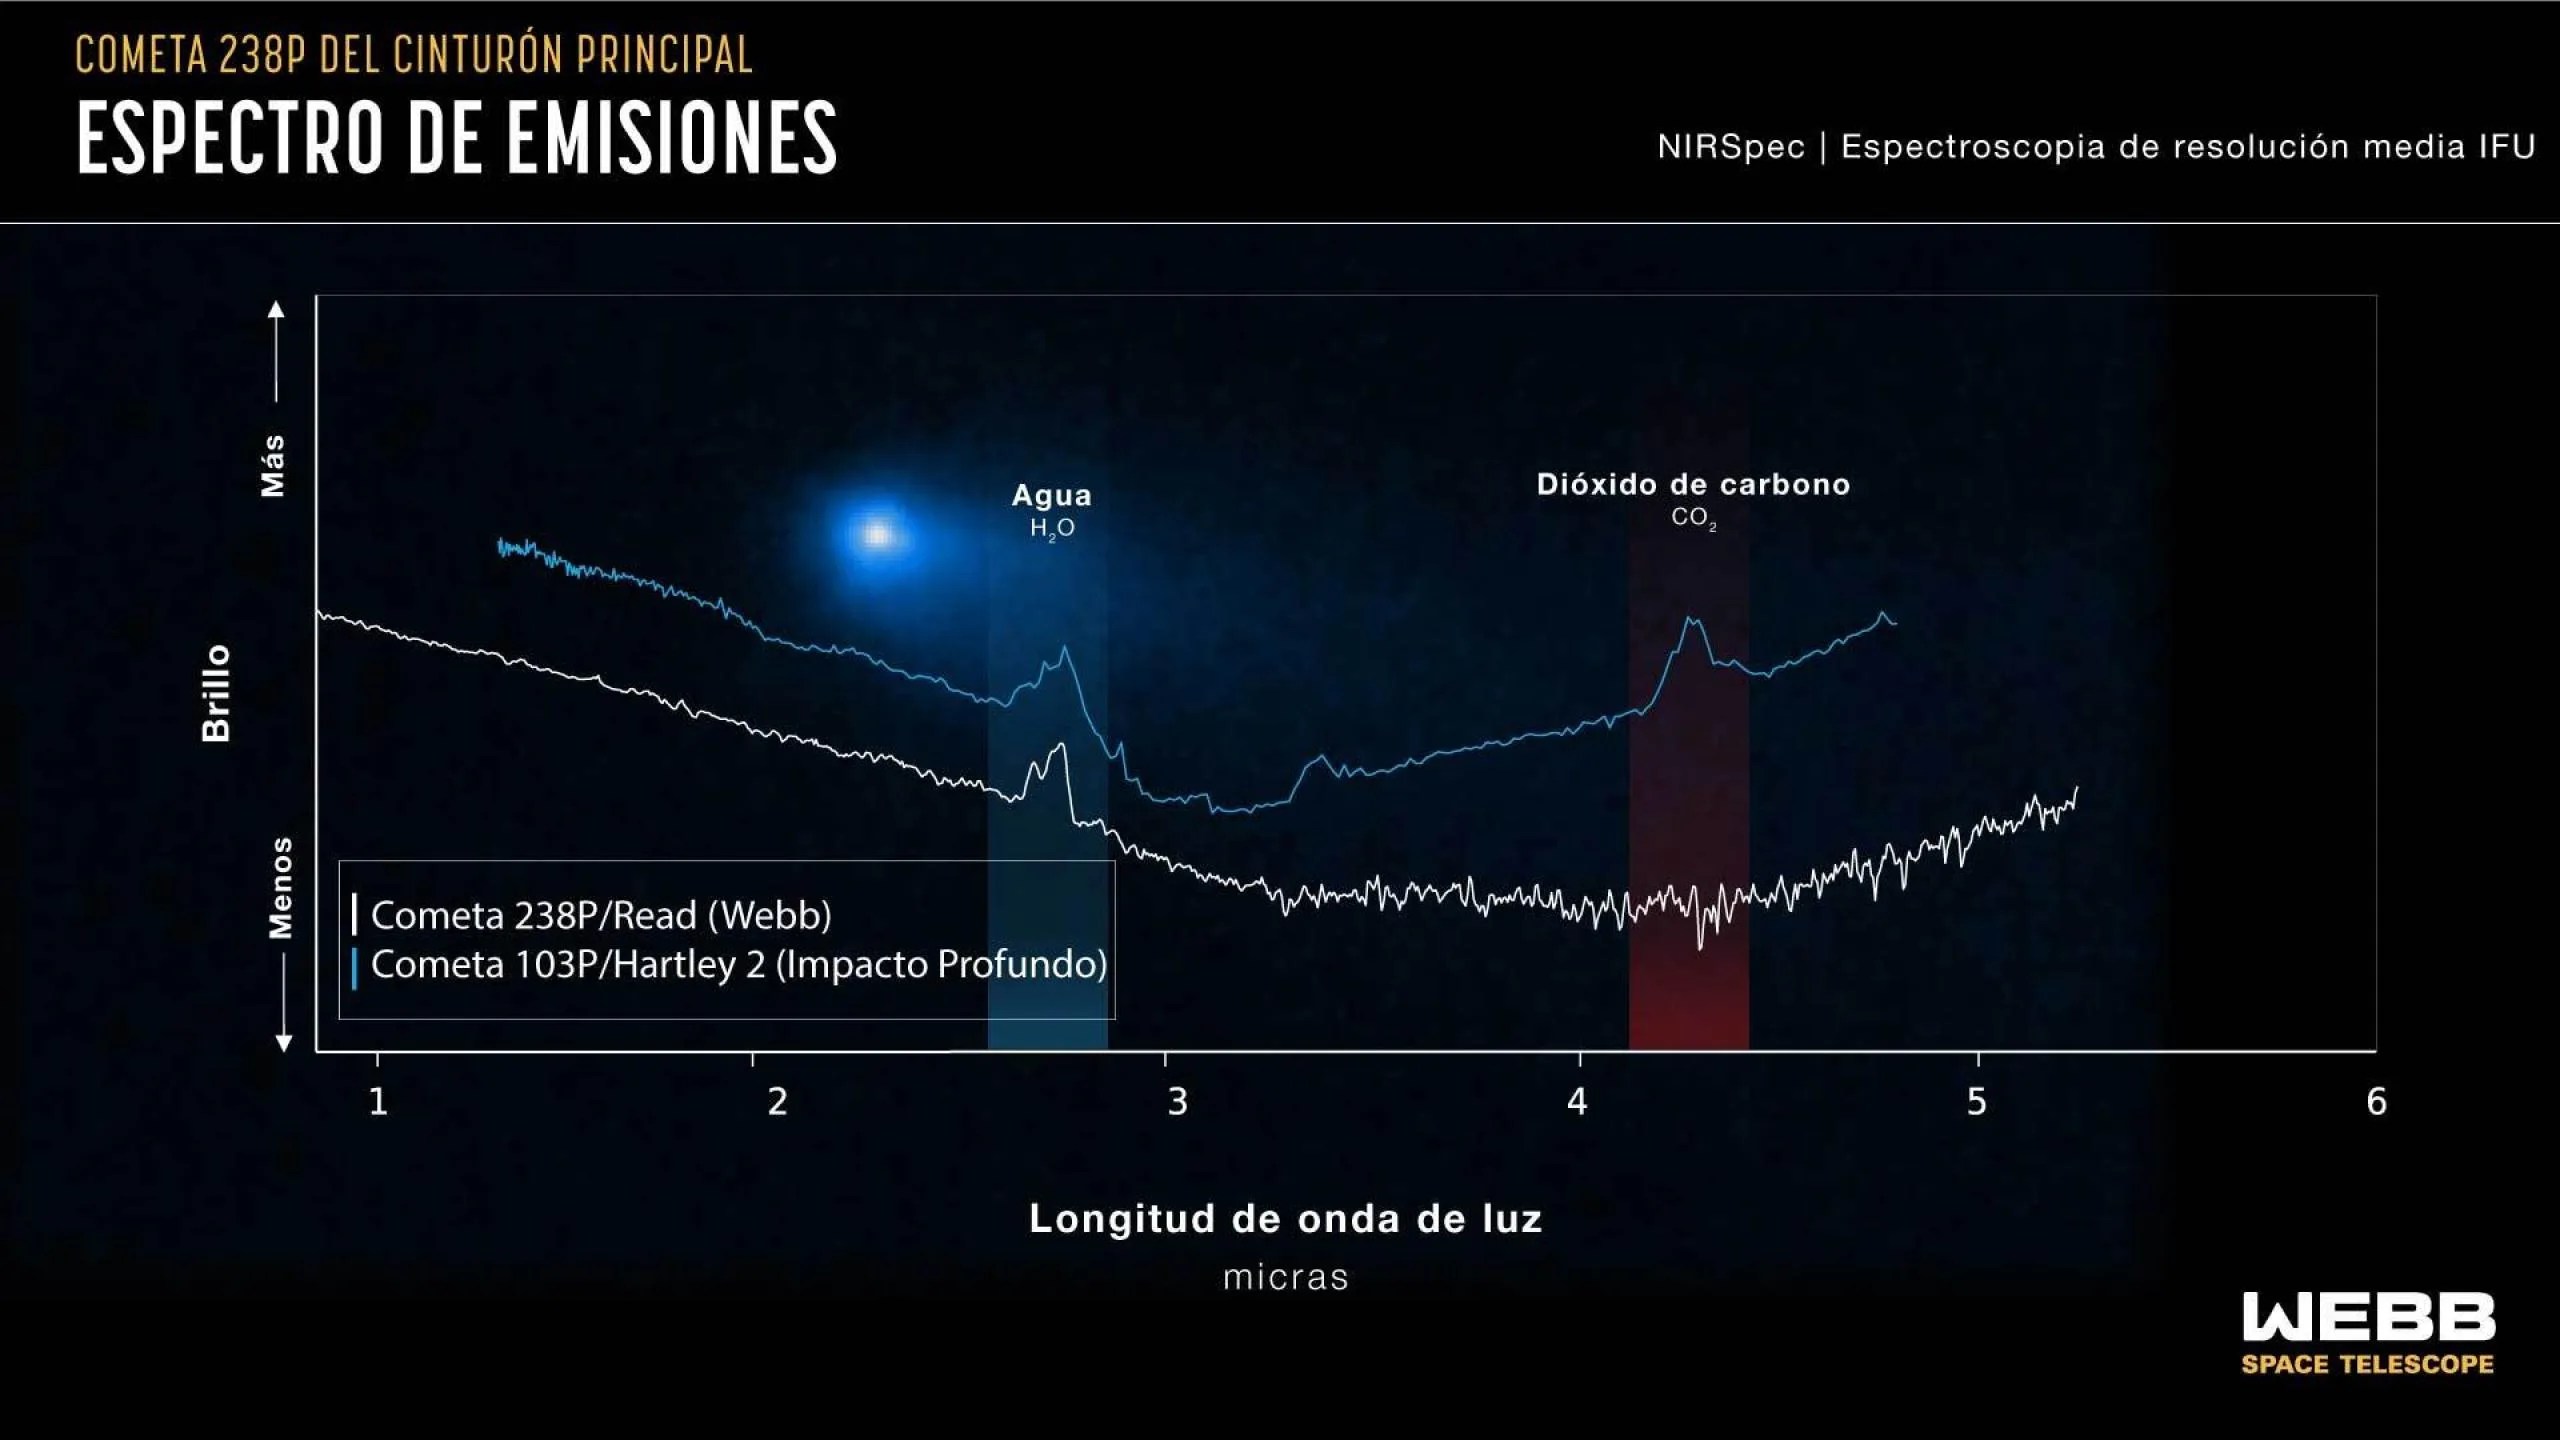 Gráfica que compara los datos espectrales del cometa 238 P/Read y el cometa 103 P/Hartley 2, destacando la detección de agua en ambos y la ausencia de dióxido de carbono en el cometa Read.